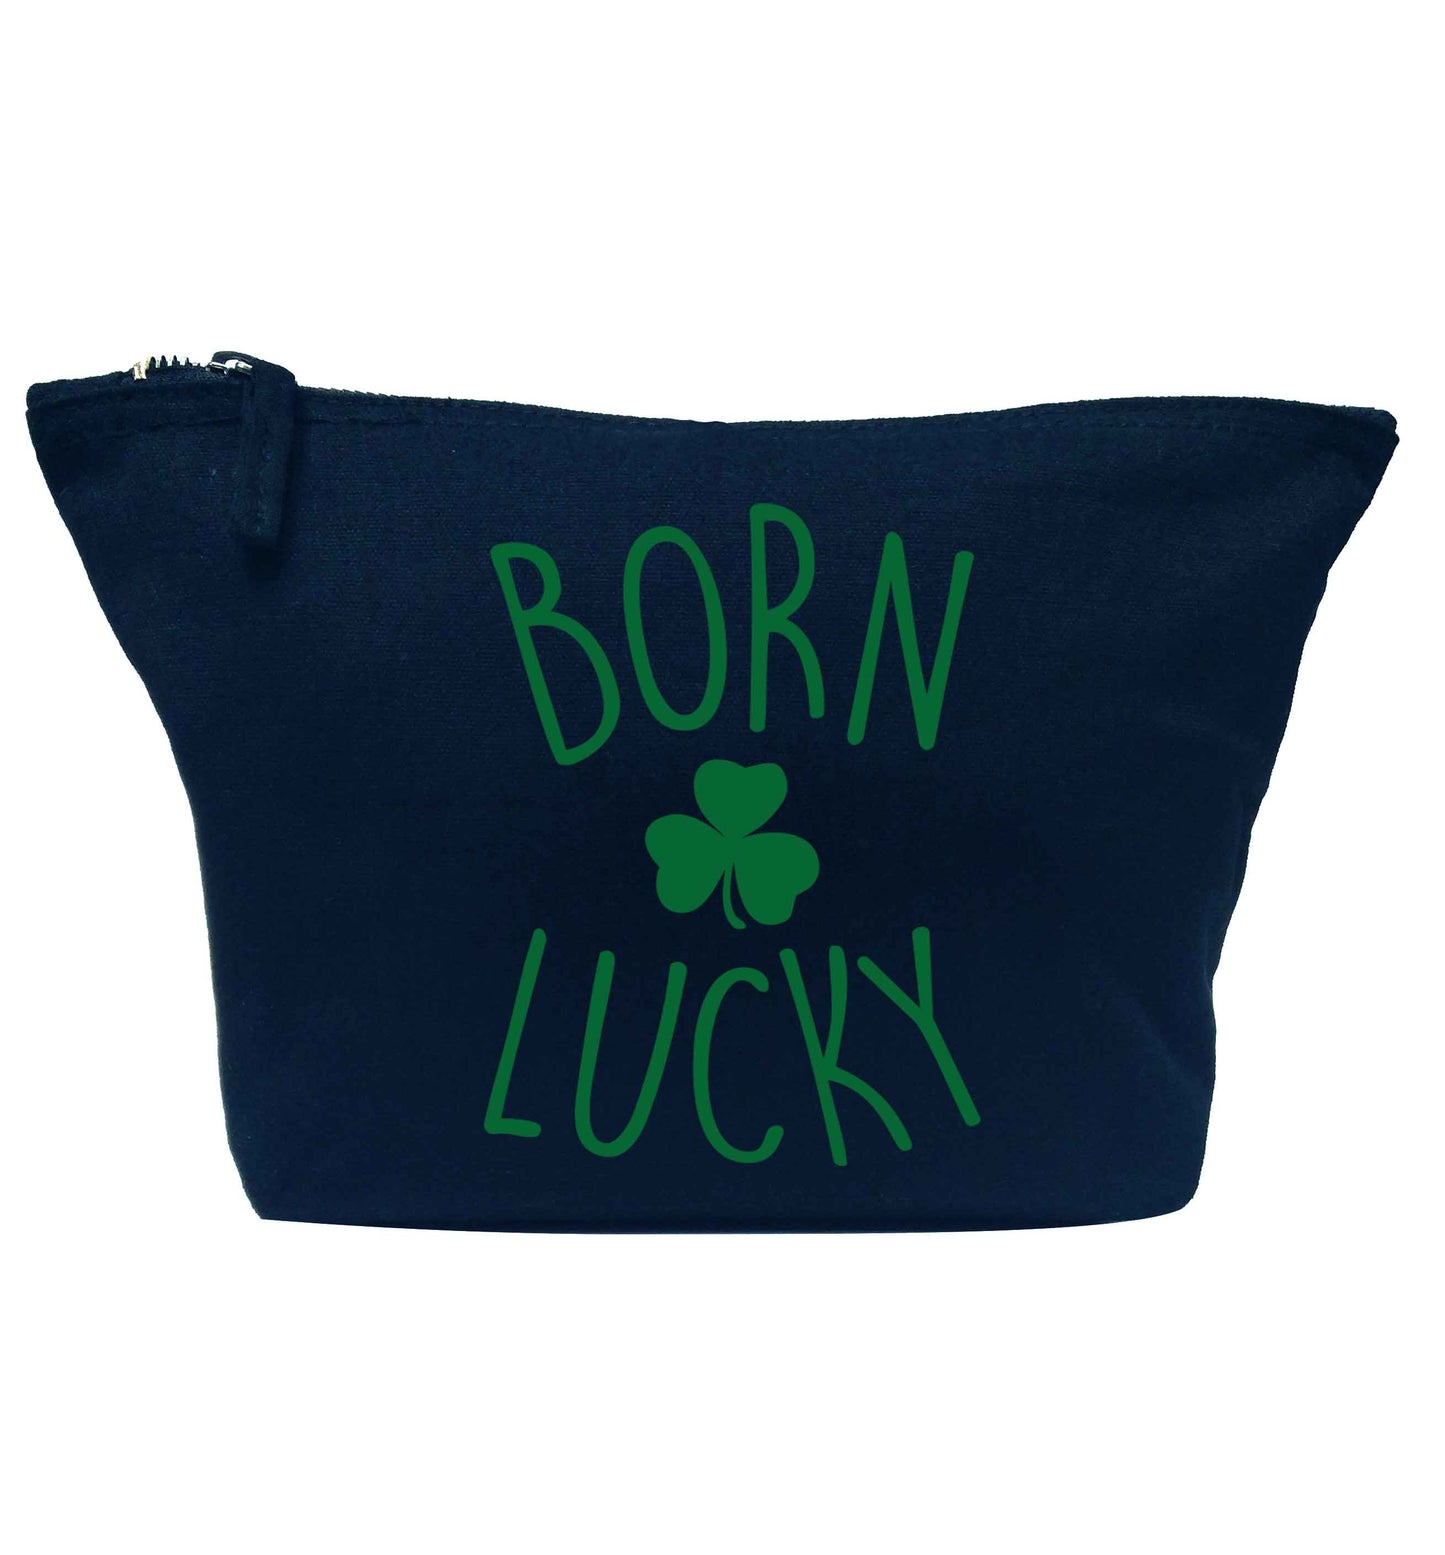  Born Lucky navy makeup bag